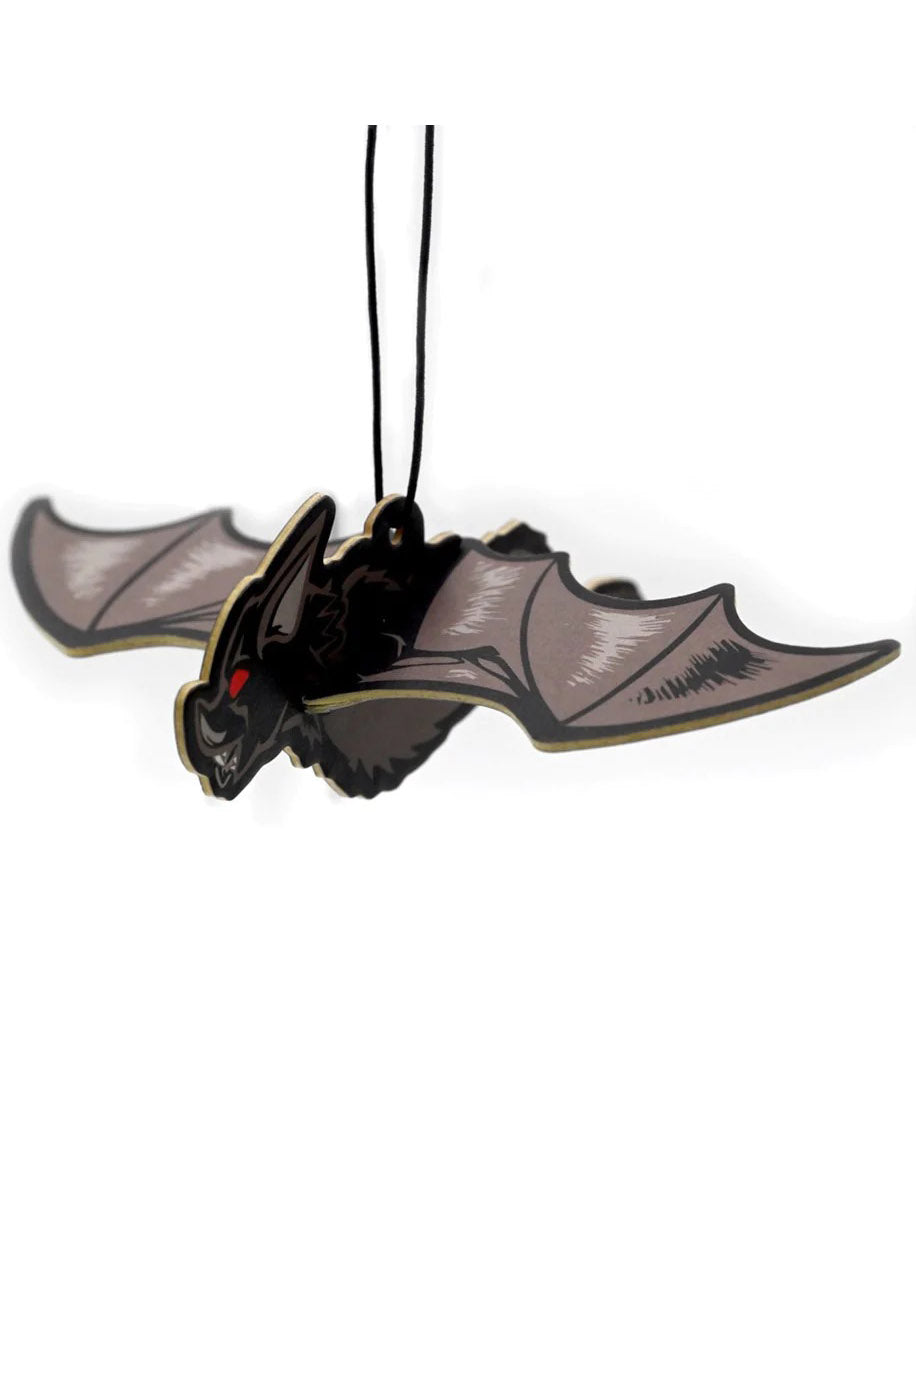 3D Bat Air Freshener